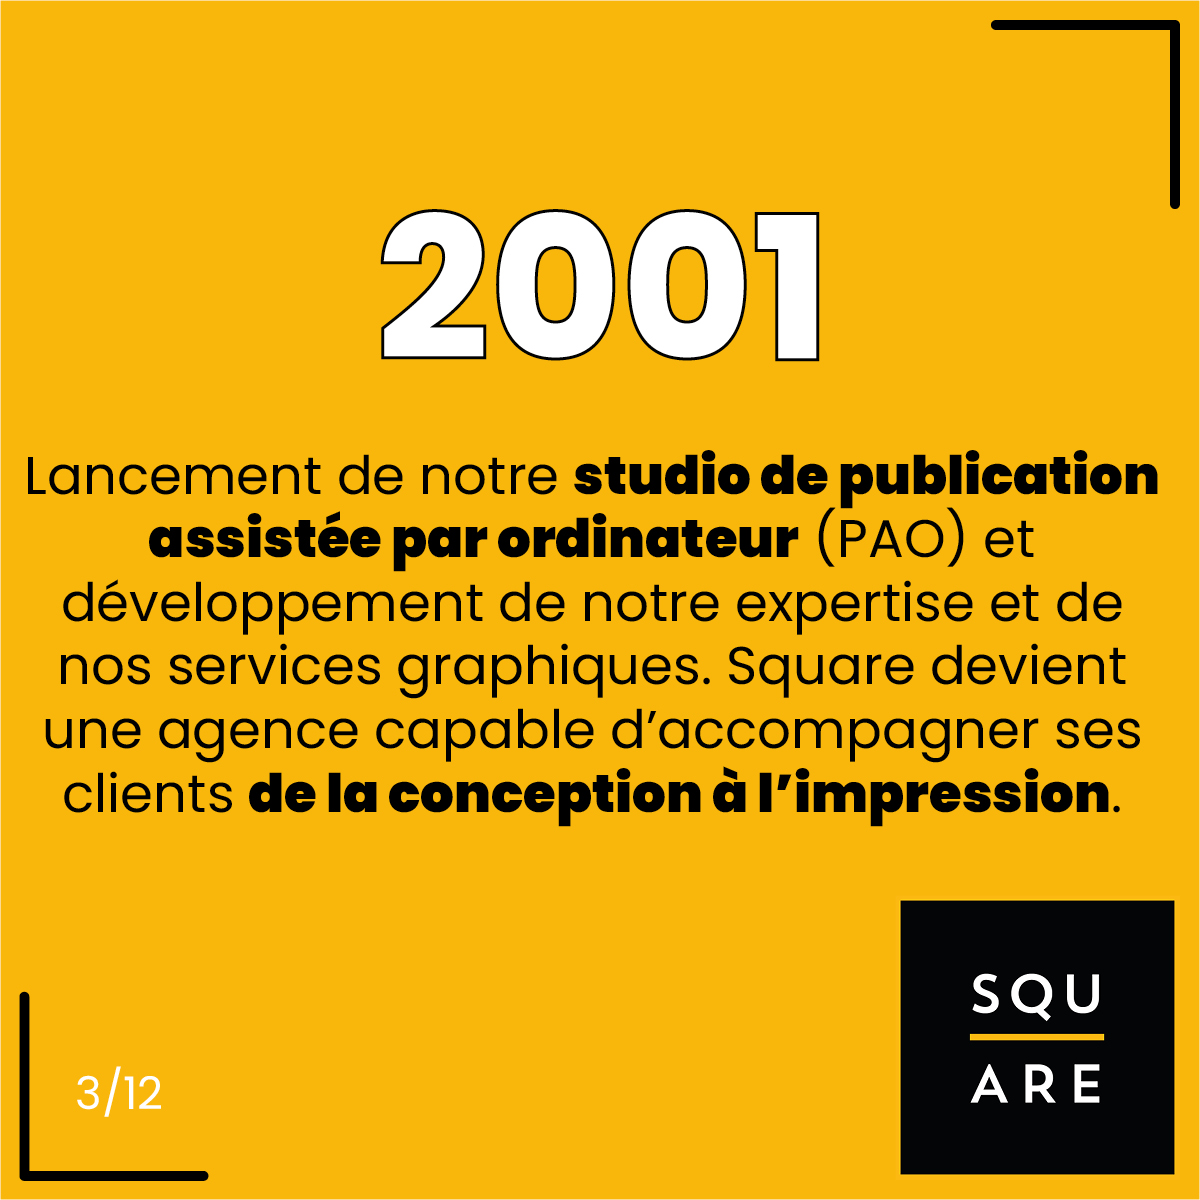 2001, Lancement de notre studio de publication assistée par ordinateur (PAO) et développement de notre expertise et de nos services graphiques. Square devient une agence capable d’accompagner ses clients de la conception à l’impression.